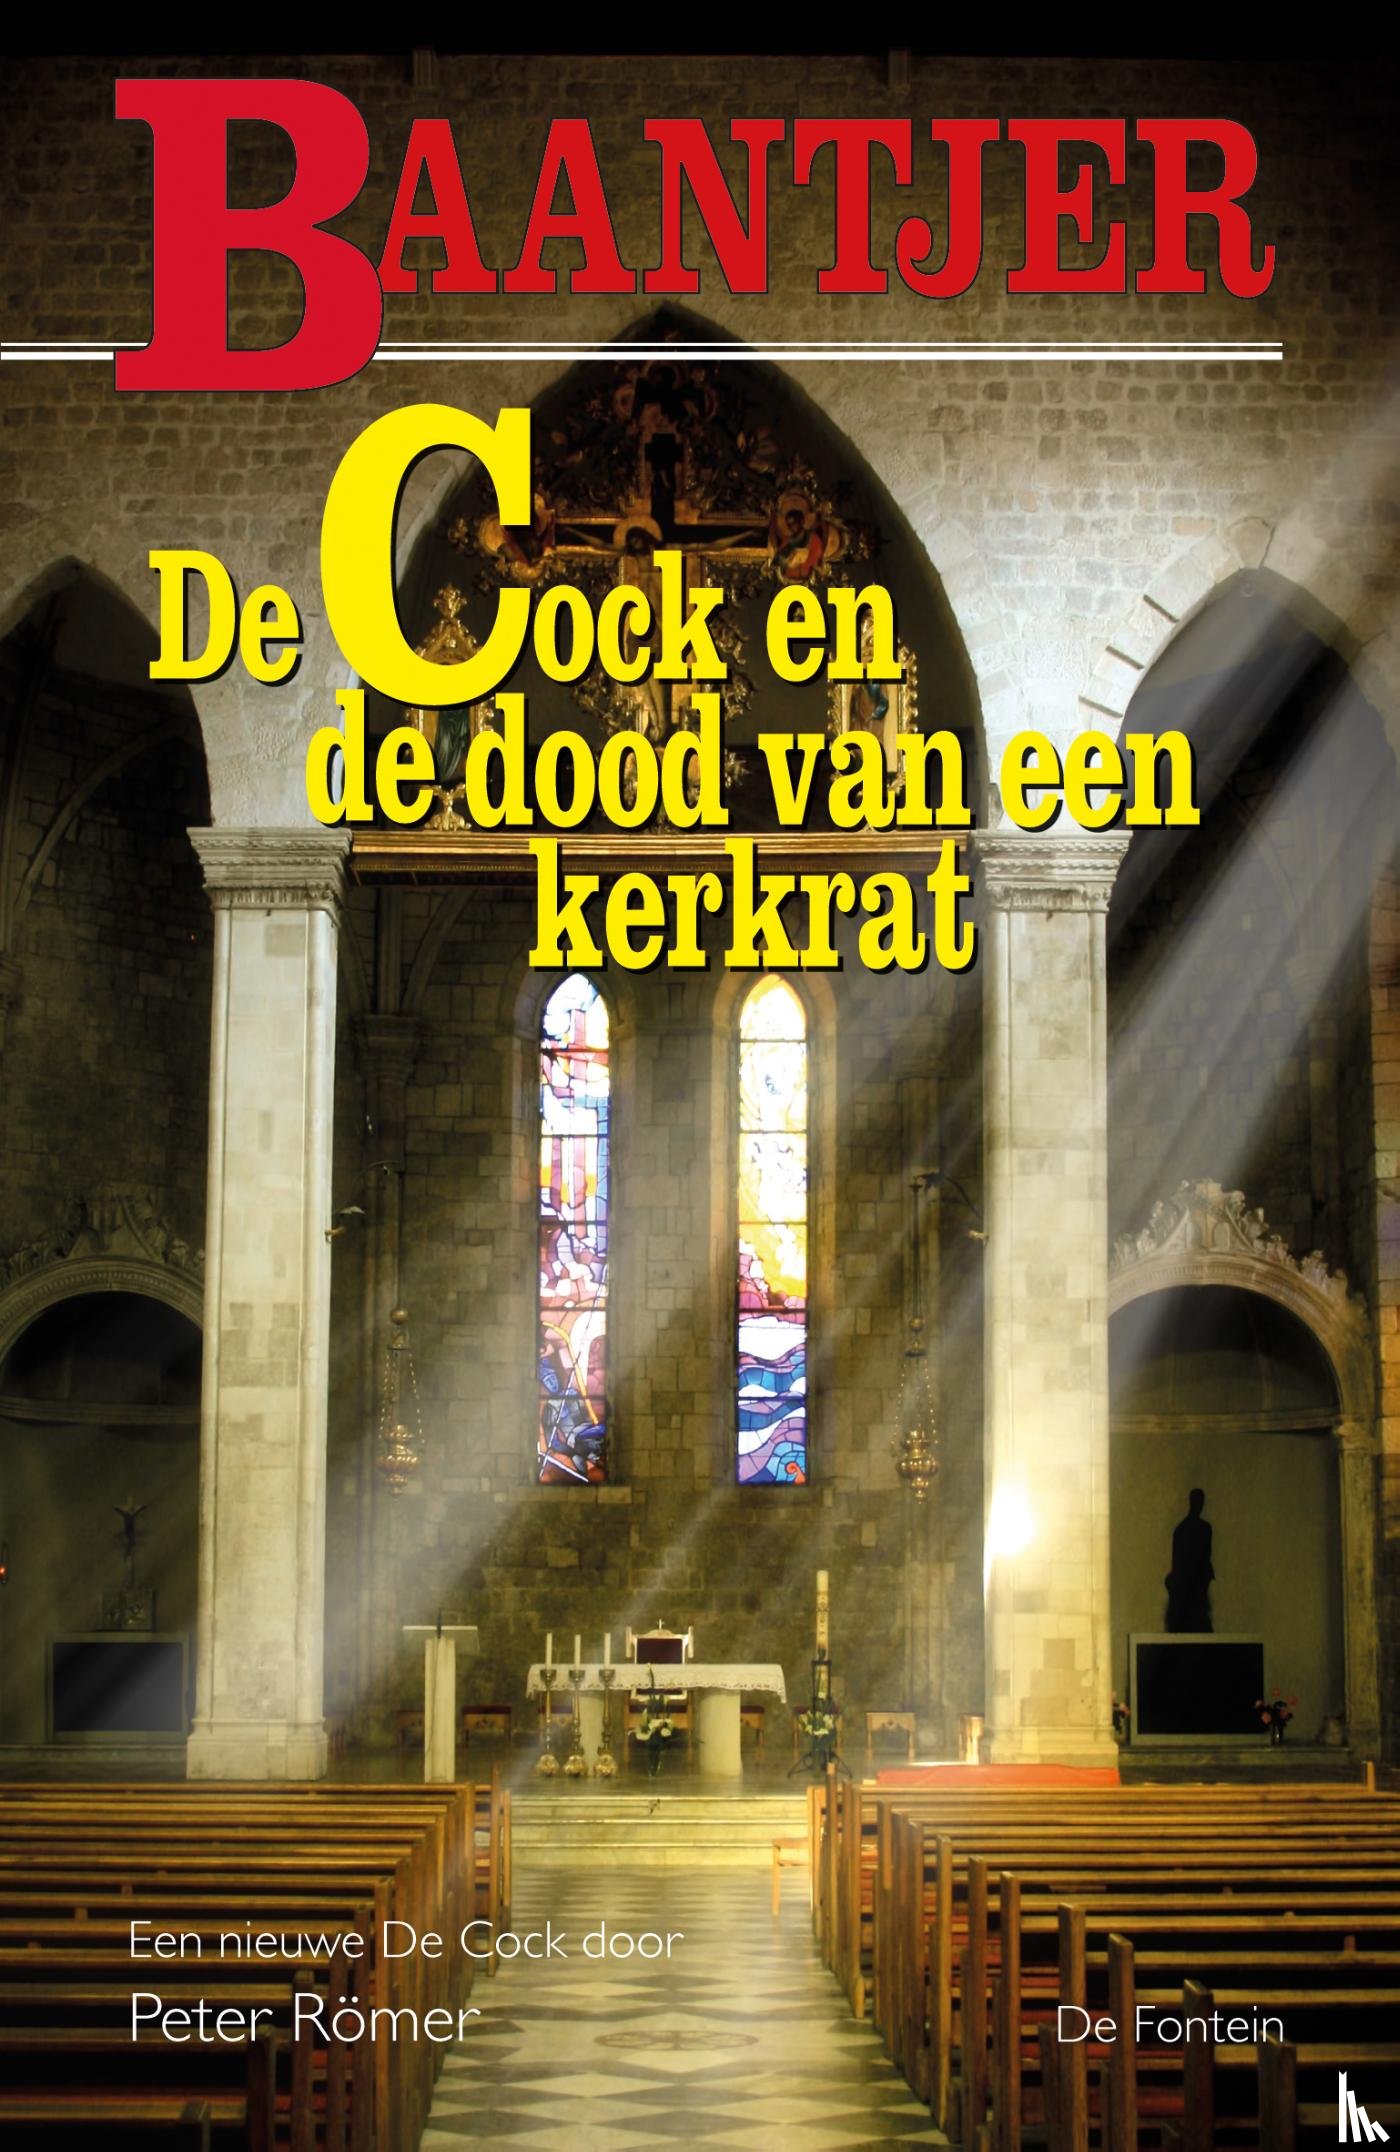 Baantjer - De Cock en de dood van een kerkrat